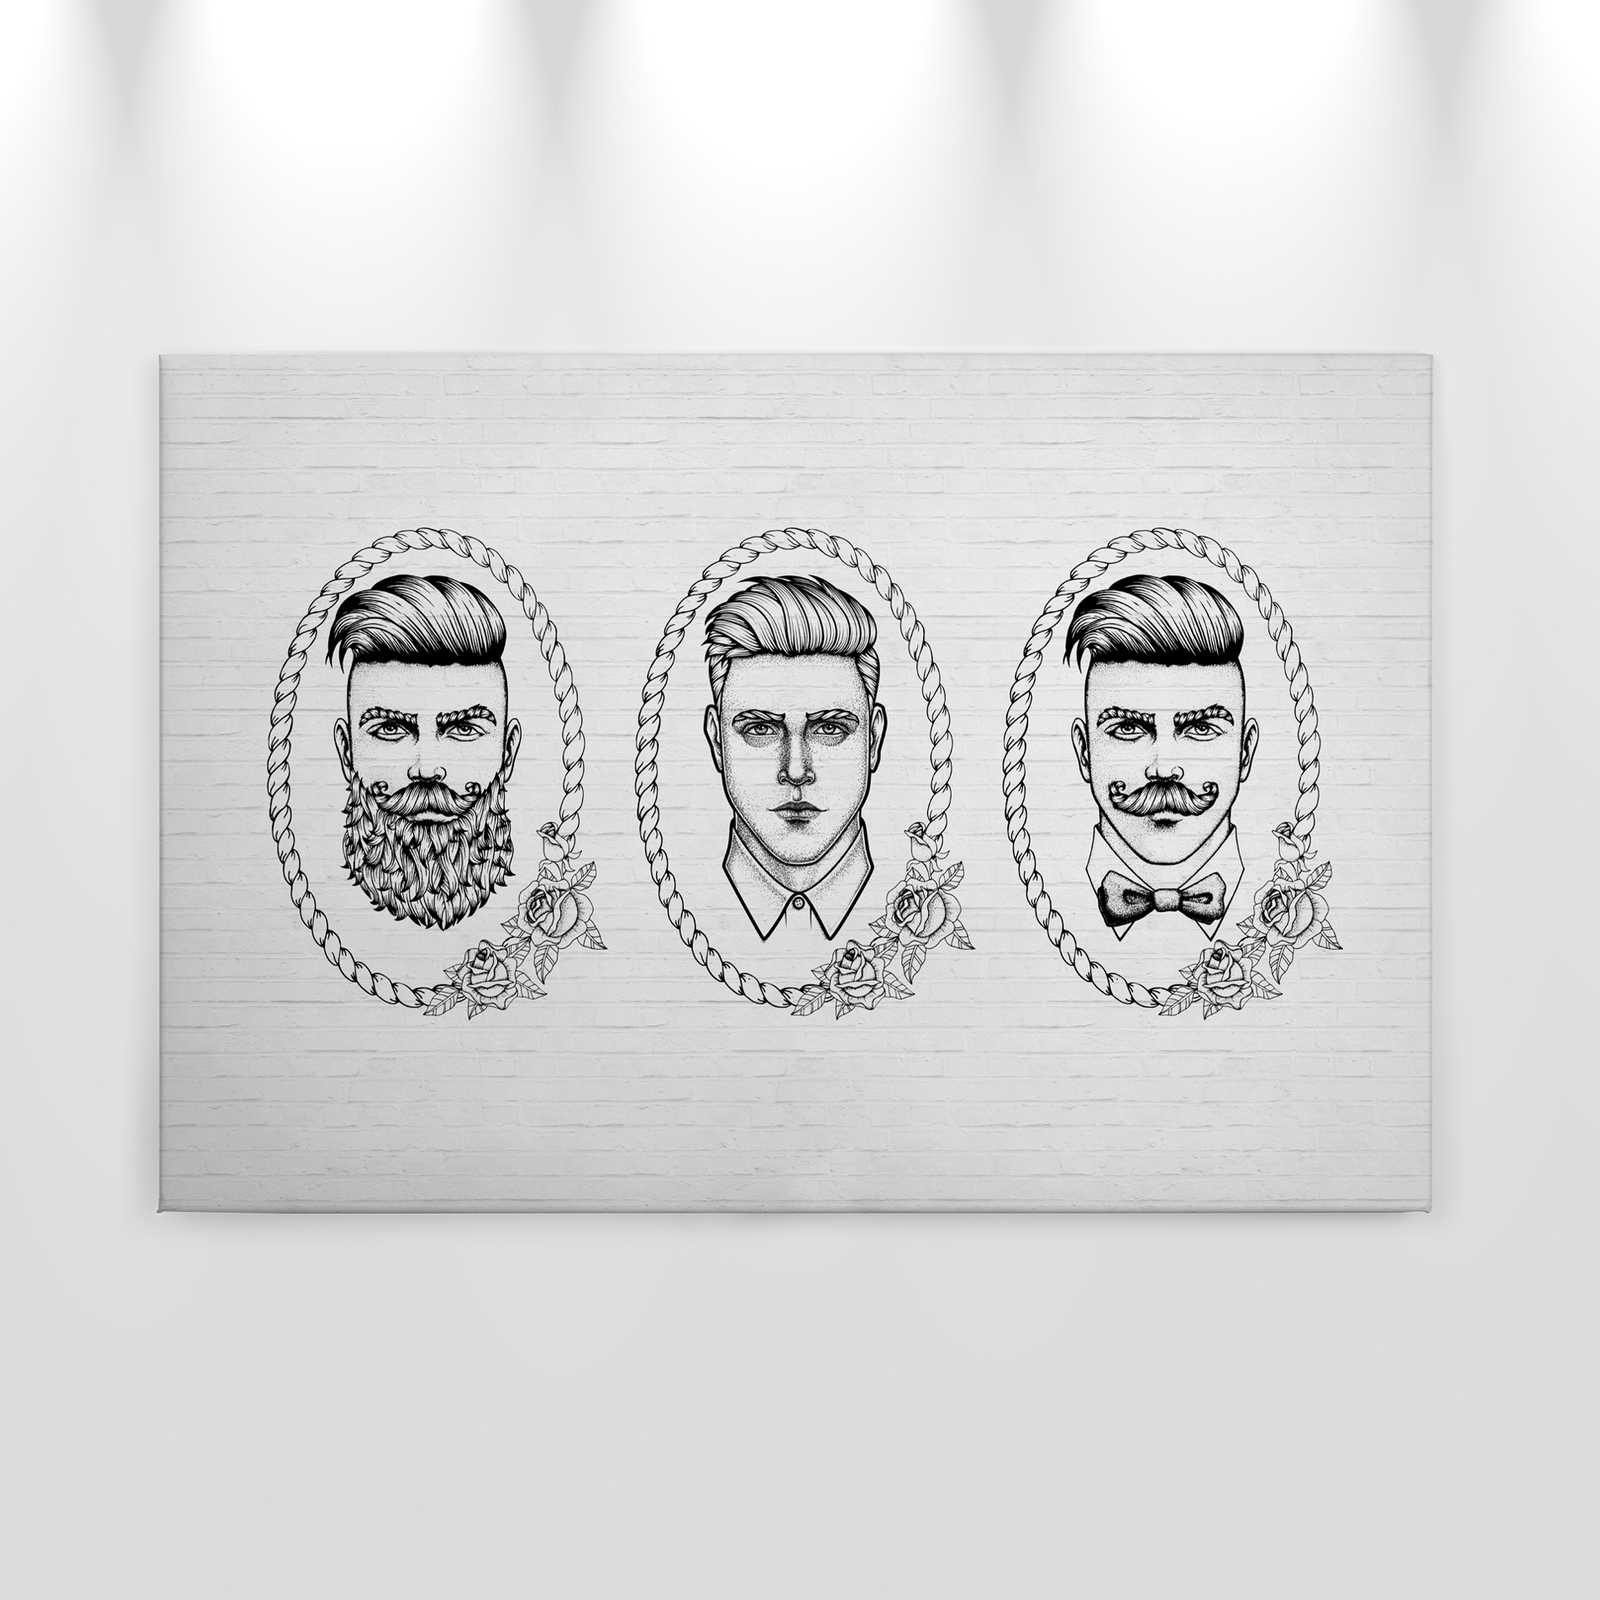             Toile noir et blanc avec portraits d'hommes style BD - 0,90 m x 0,60 m
        